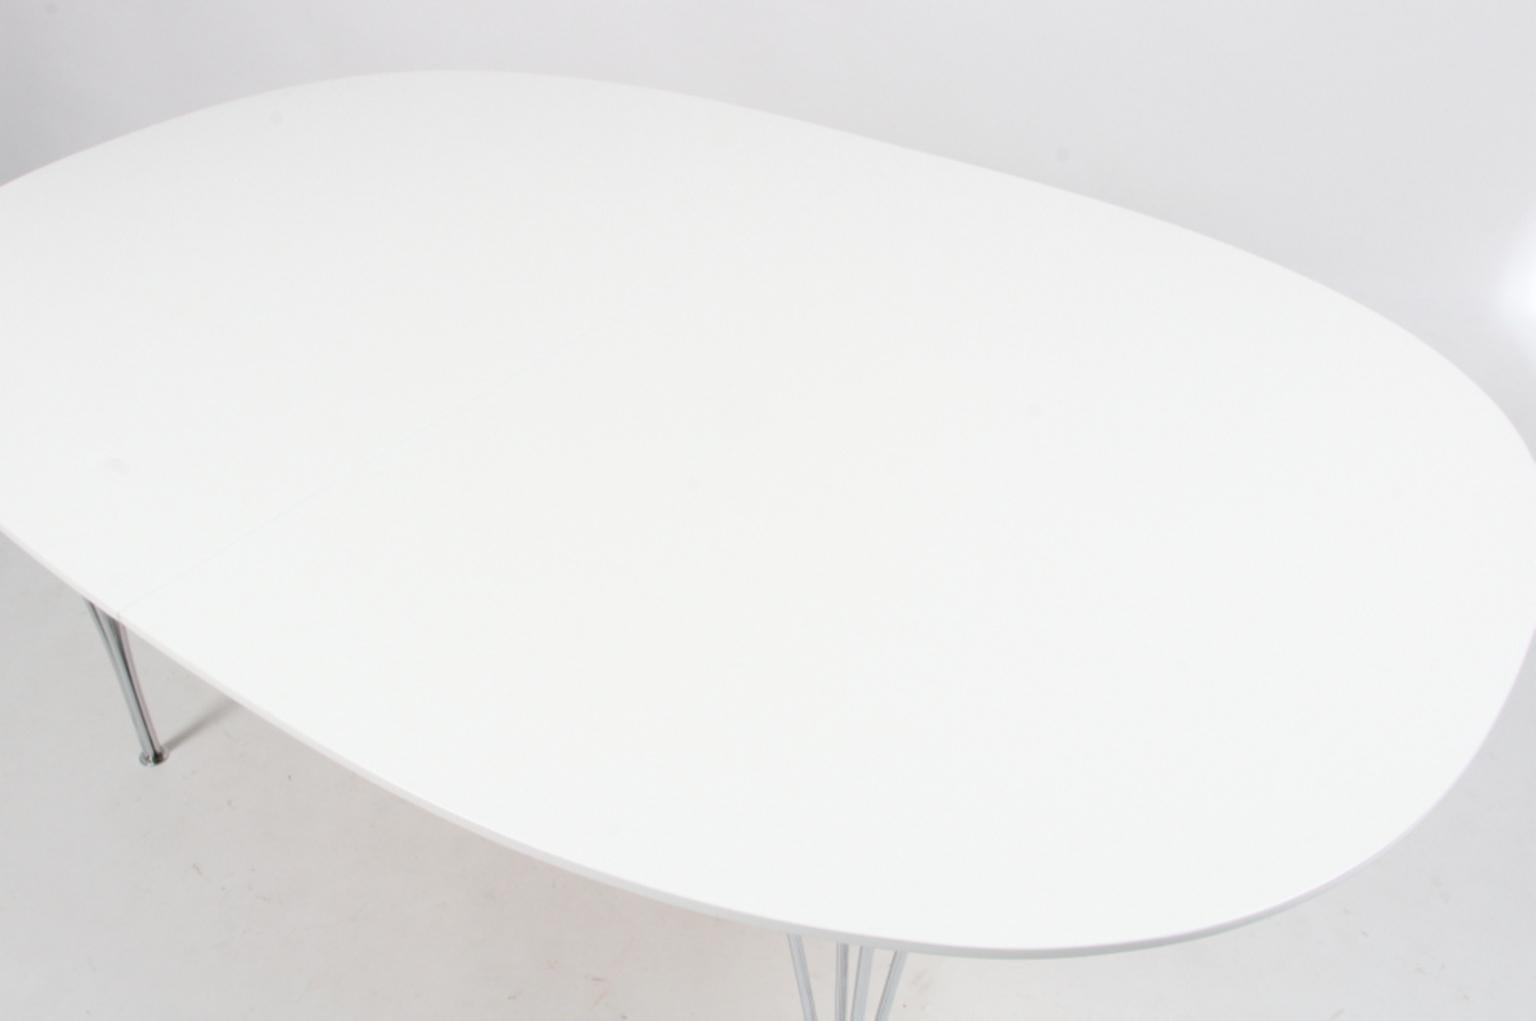 Scandinavian Modern Piet Hein & Bruno Mathsson Dining Table with Extension Leaf, Super Elipse